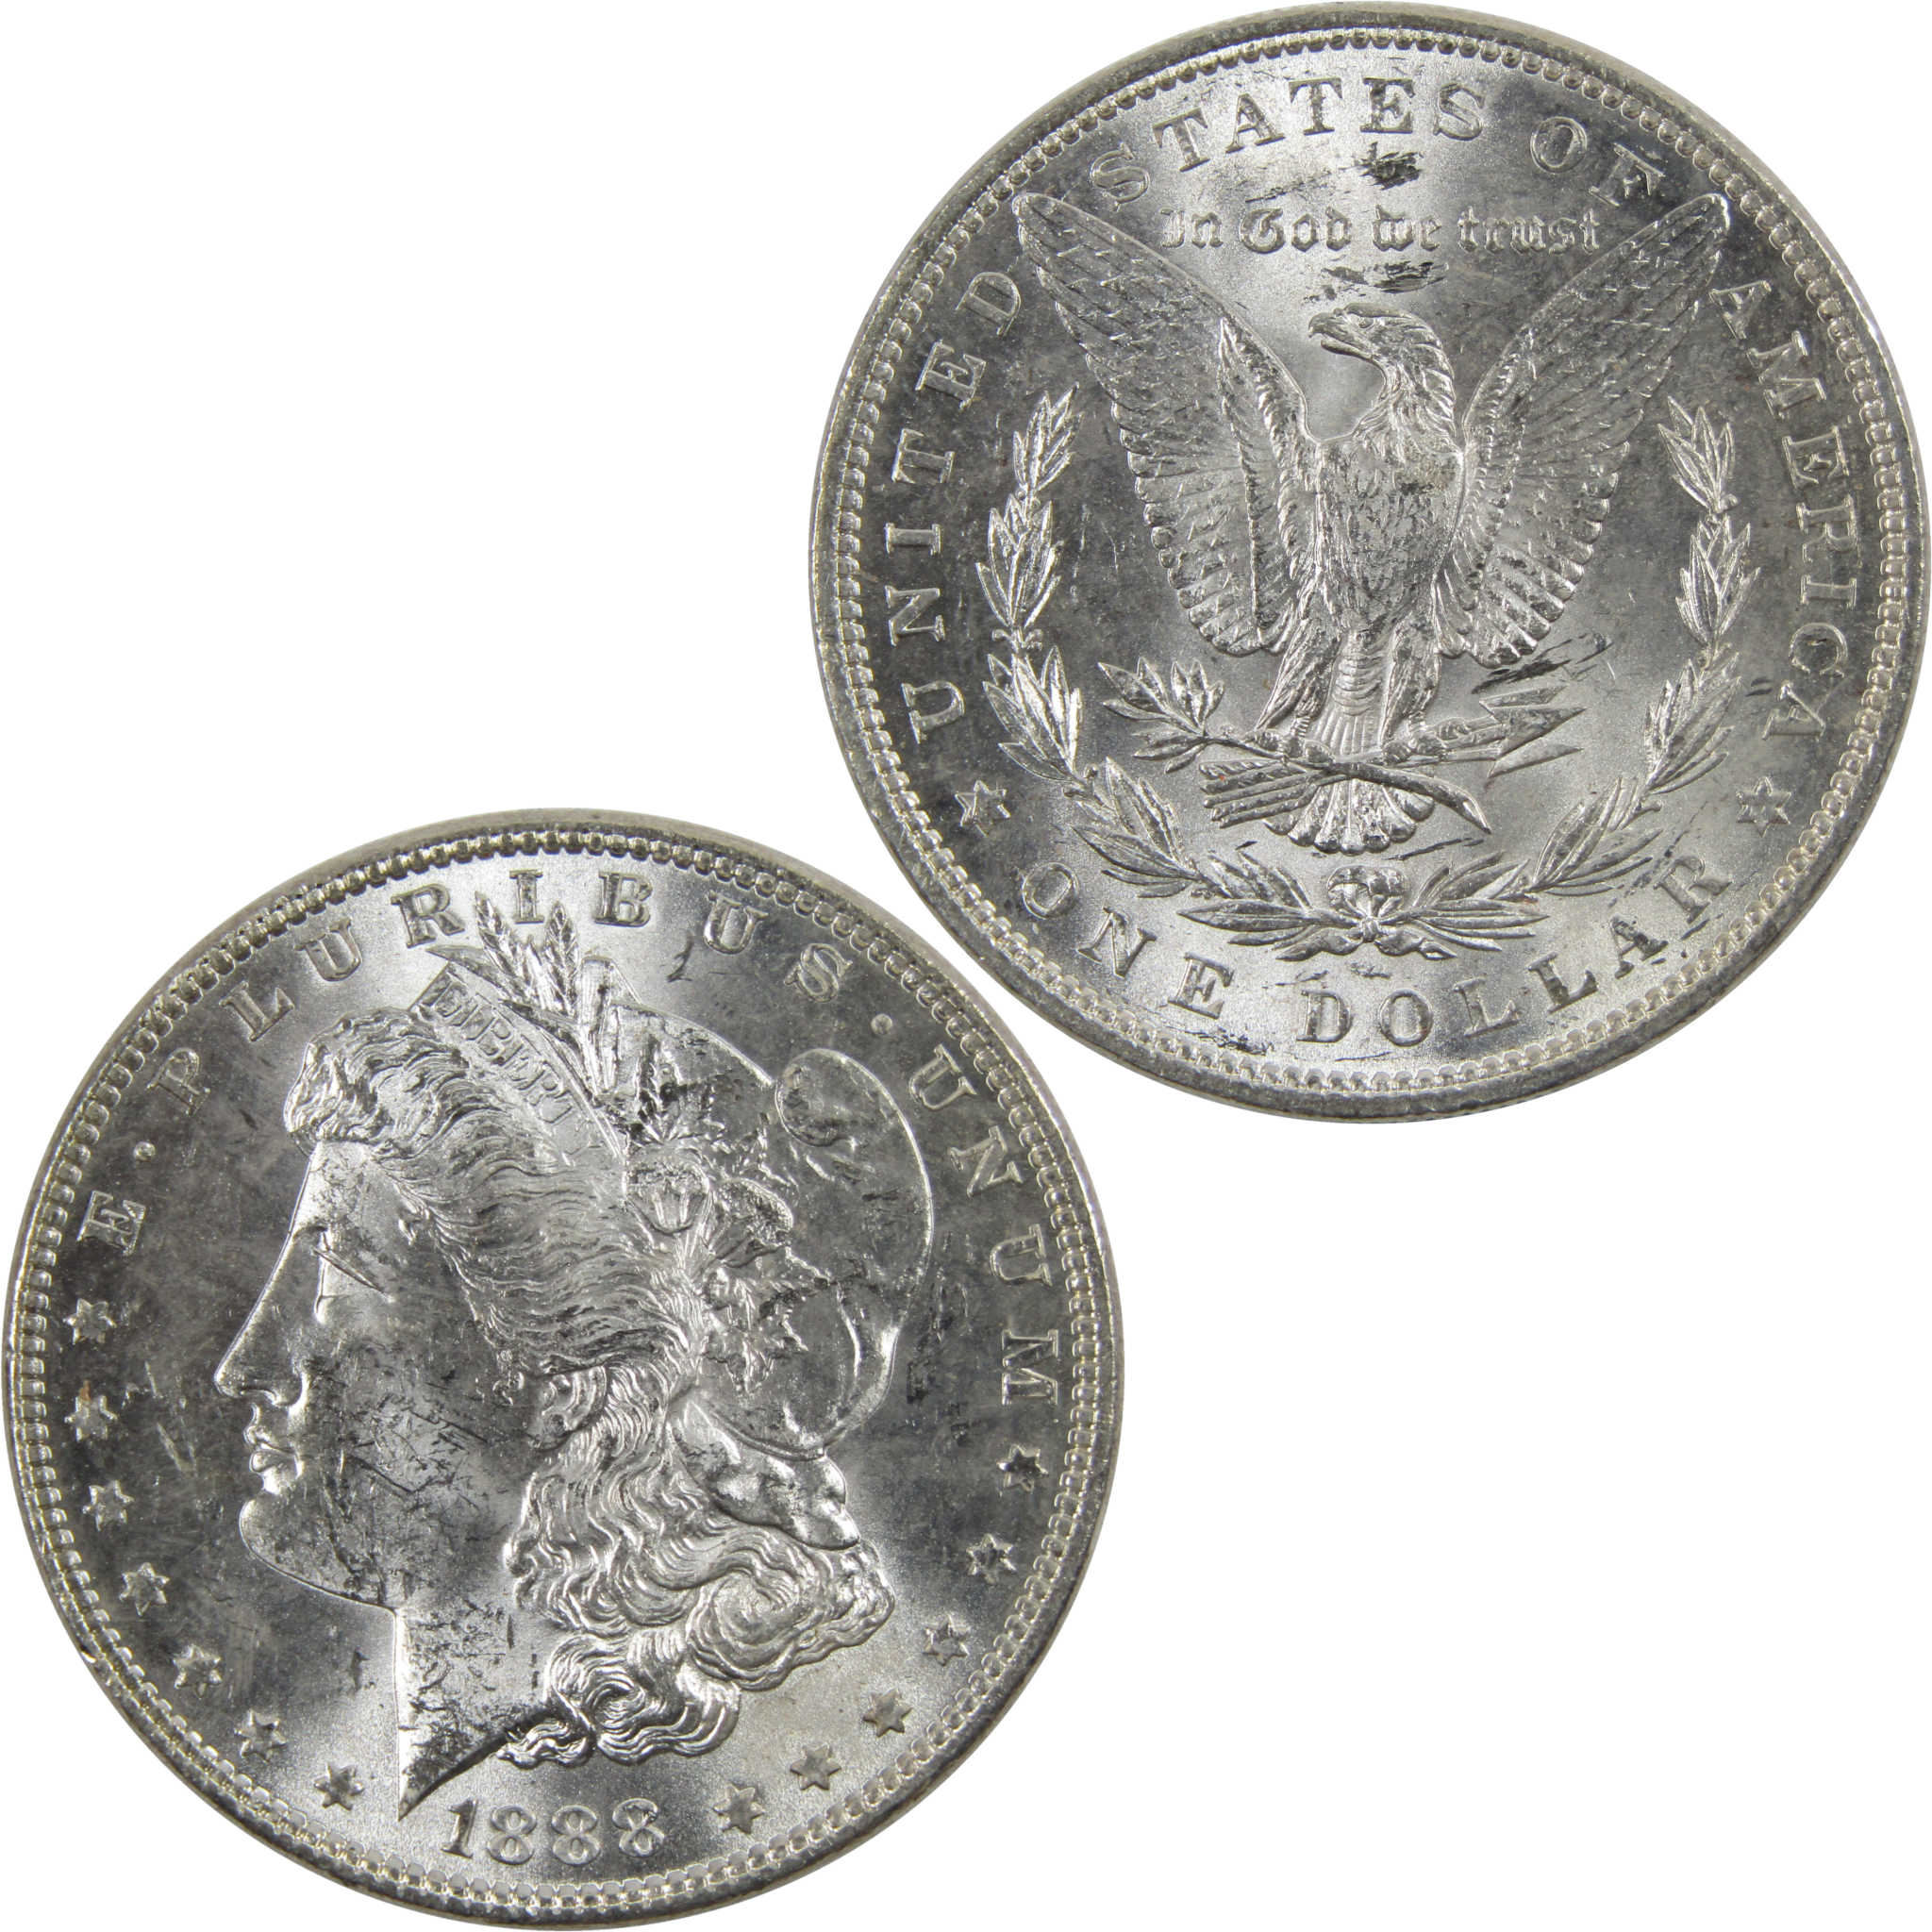 1888 Morgan Dollar BU Uncirculated 90% Silver $1 Coin SKU:I6033 - Morgan coin - Morgan silver dollar - Morgan silver dollar for sale - Profile Coins &amp; Collectibles